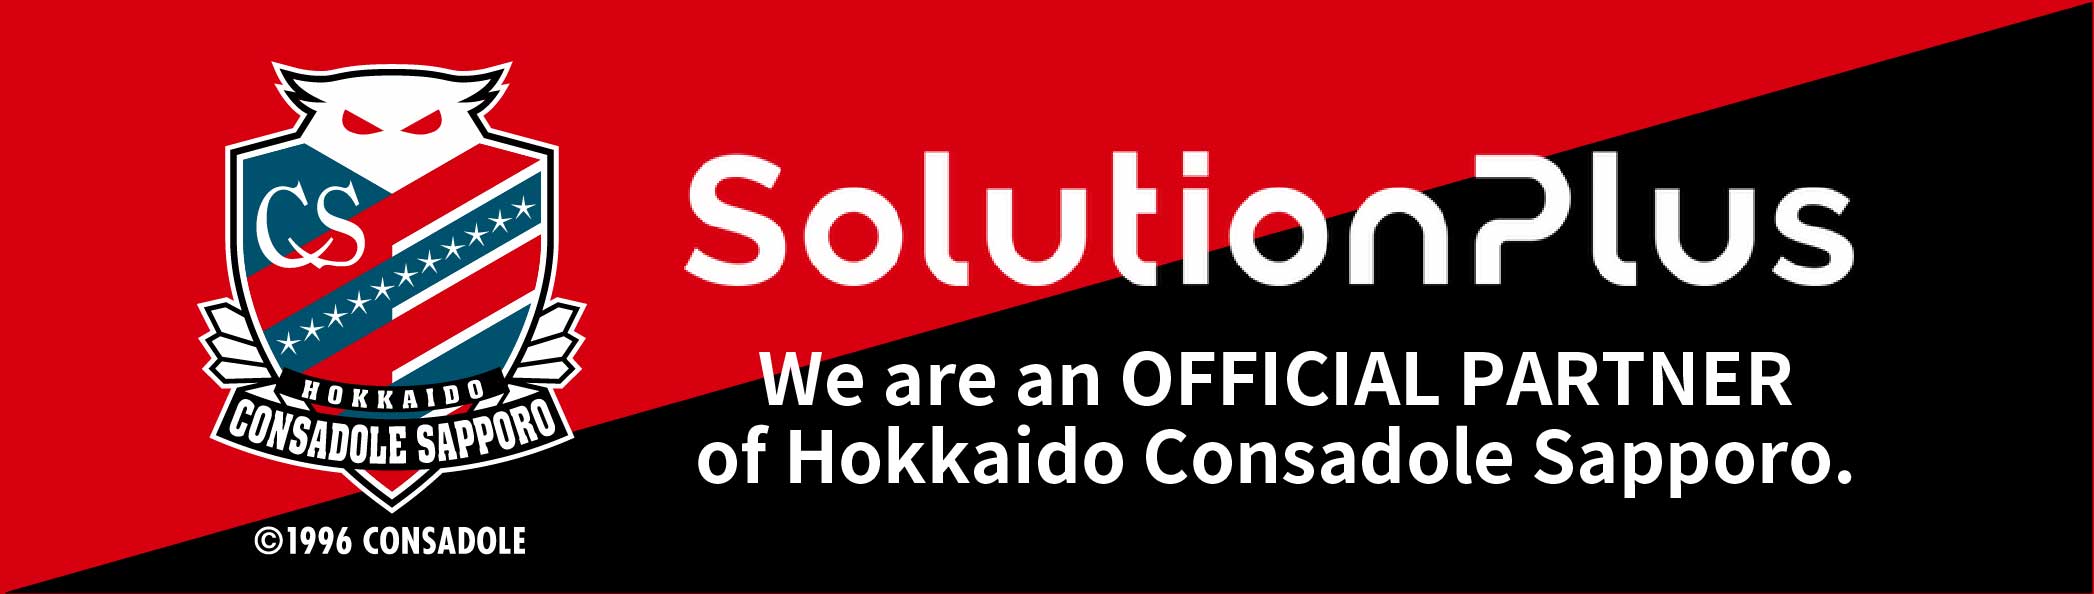 We are an OFFICIALPARTNER of Hokkaido Consadole Sapporo.